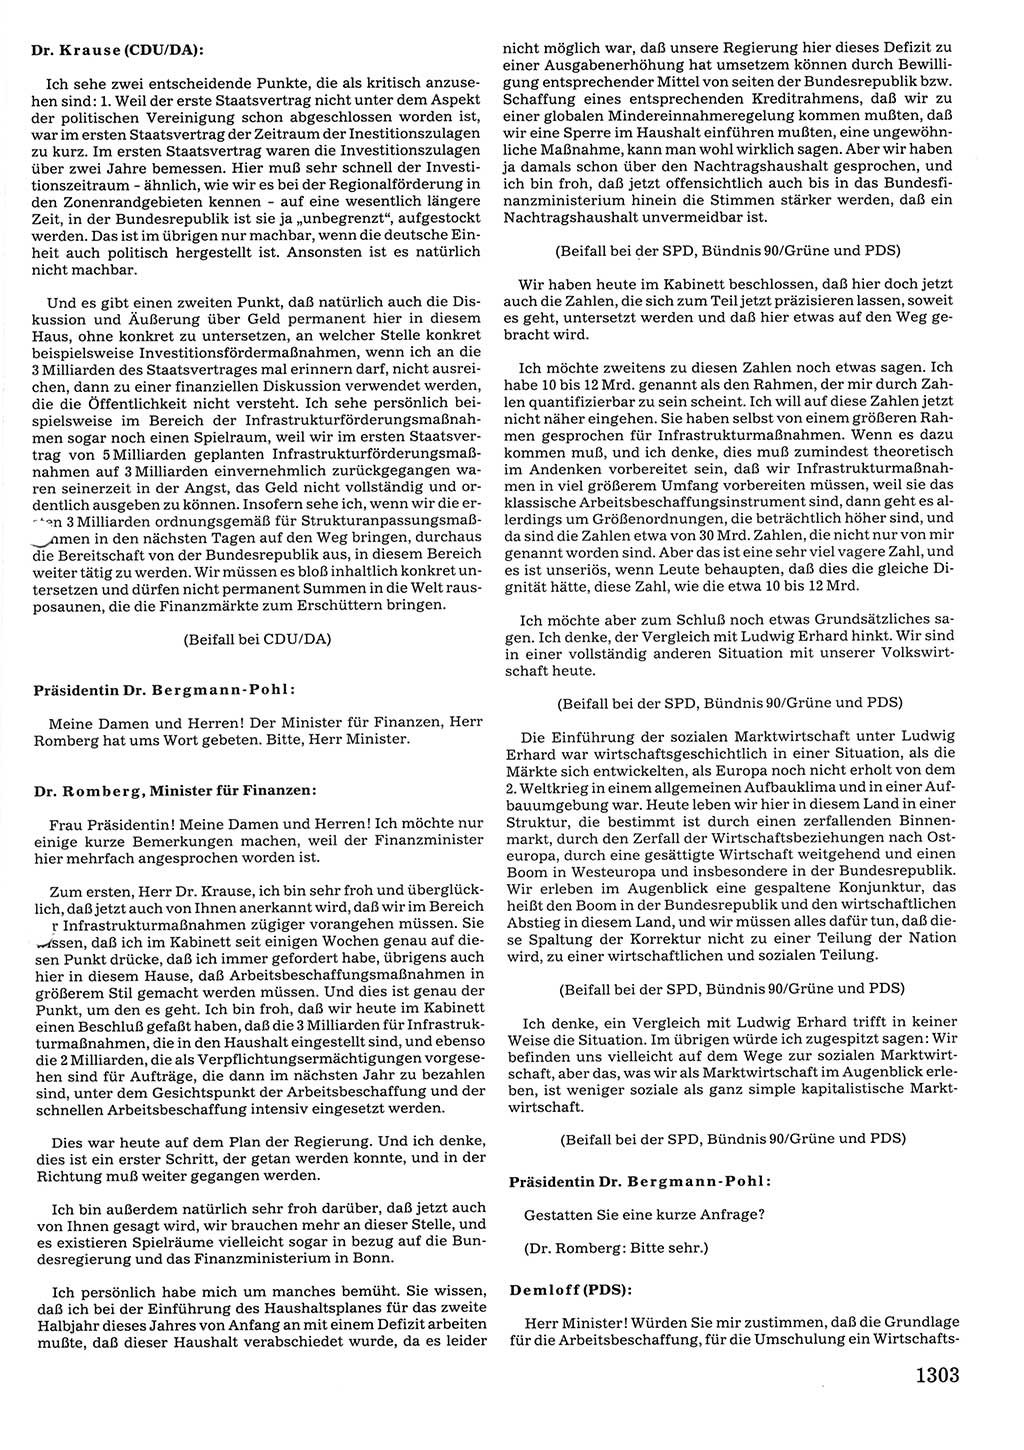 Tagungen der Volkskammer (VK) der Deutschen Demokratischen Republik (DDR), 10. Wahlperiode 1990, Seite 1303 (VK. DDR 10. WP. 1990, Prot. Tg. 1-38, 5.4.-2.10.1990, S. 1303)